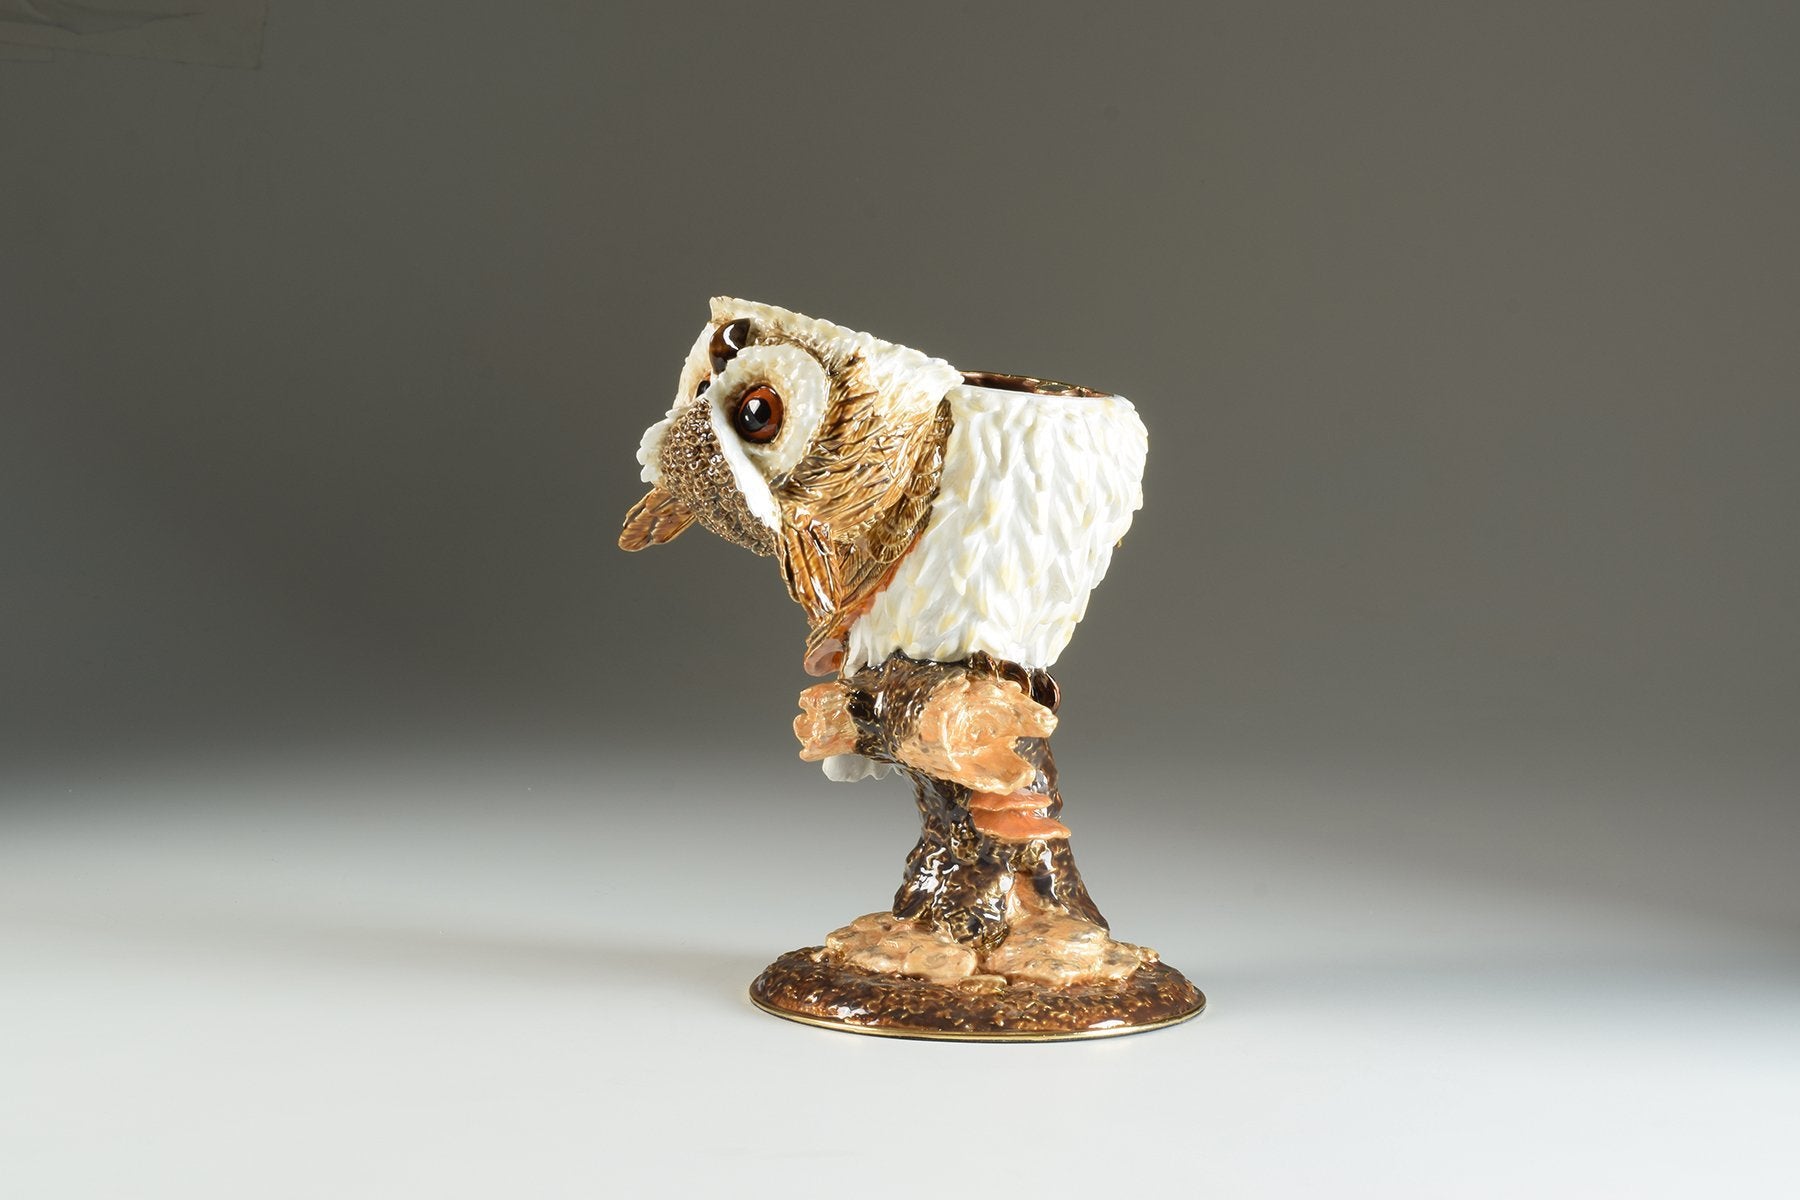 Keren Kopal Large Brown Owl trinket box 466.50